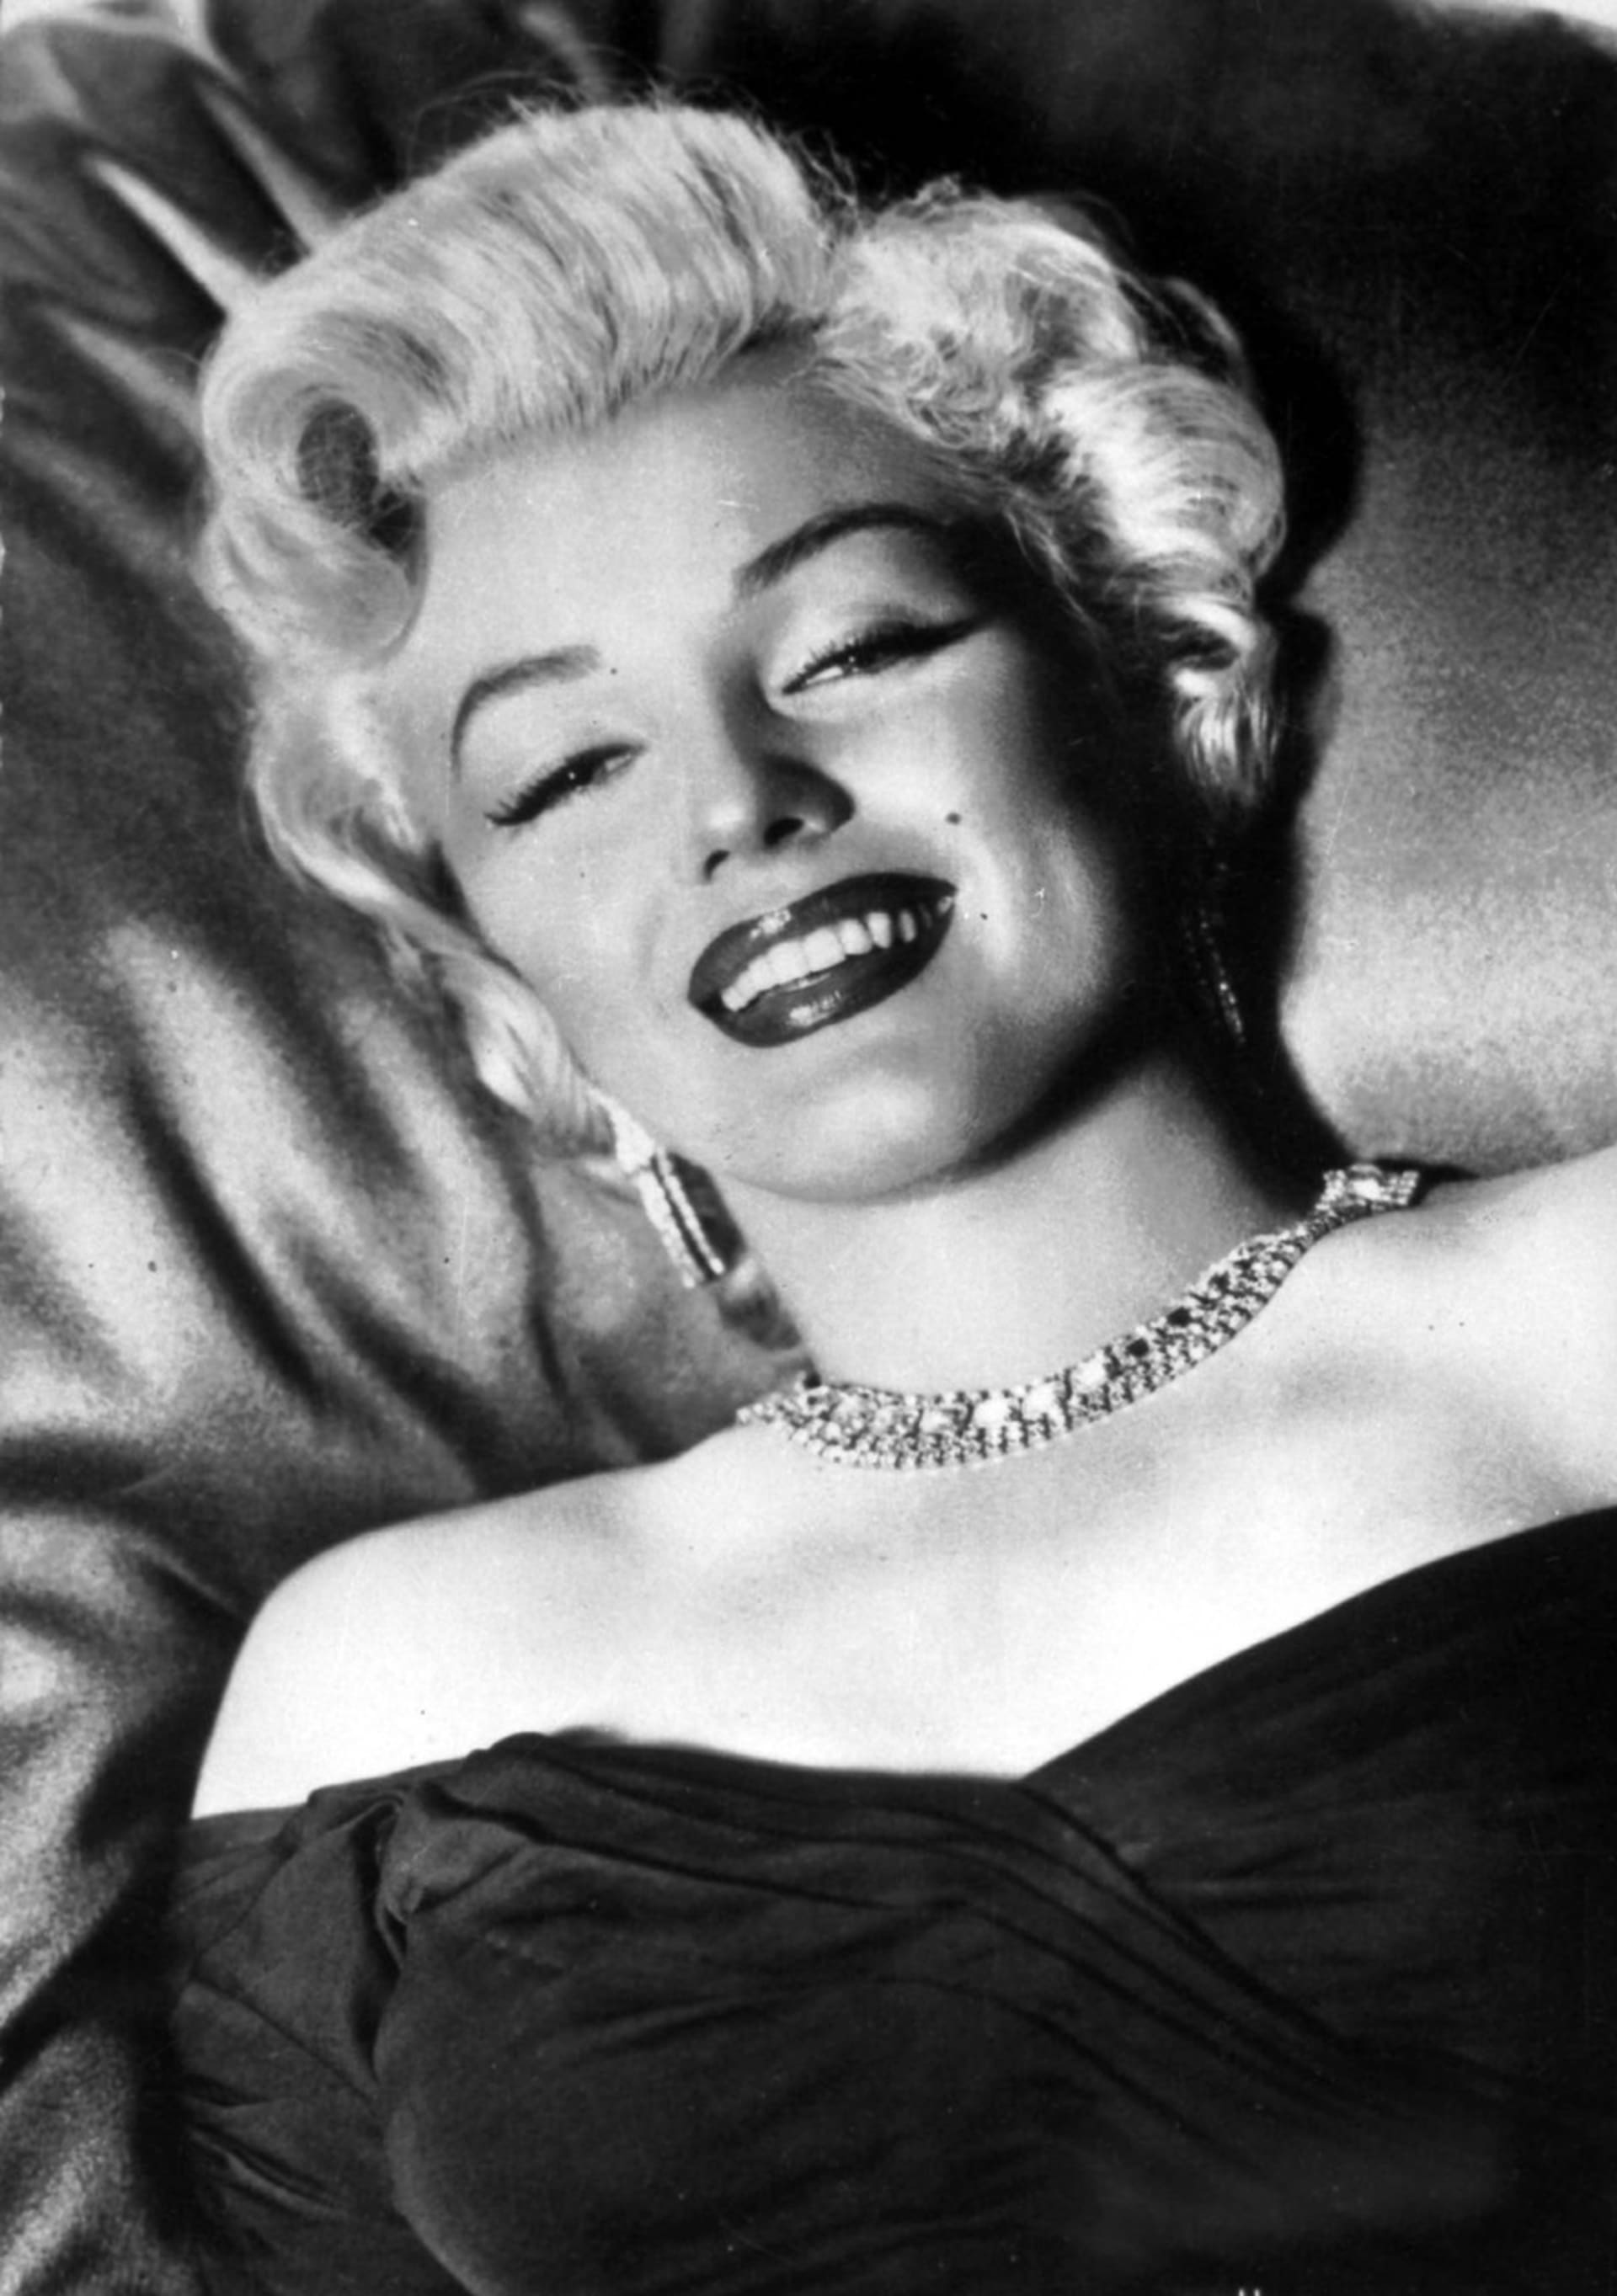 Marilyn Monroe dosáhla největší slávy poté, co nafotila akty pro pánský časopis.